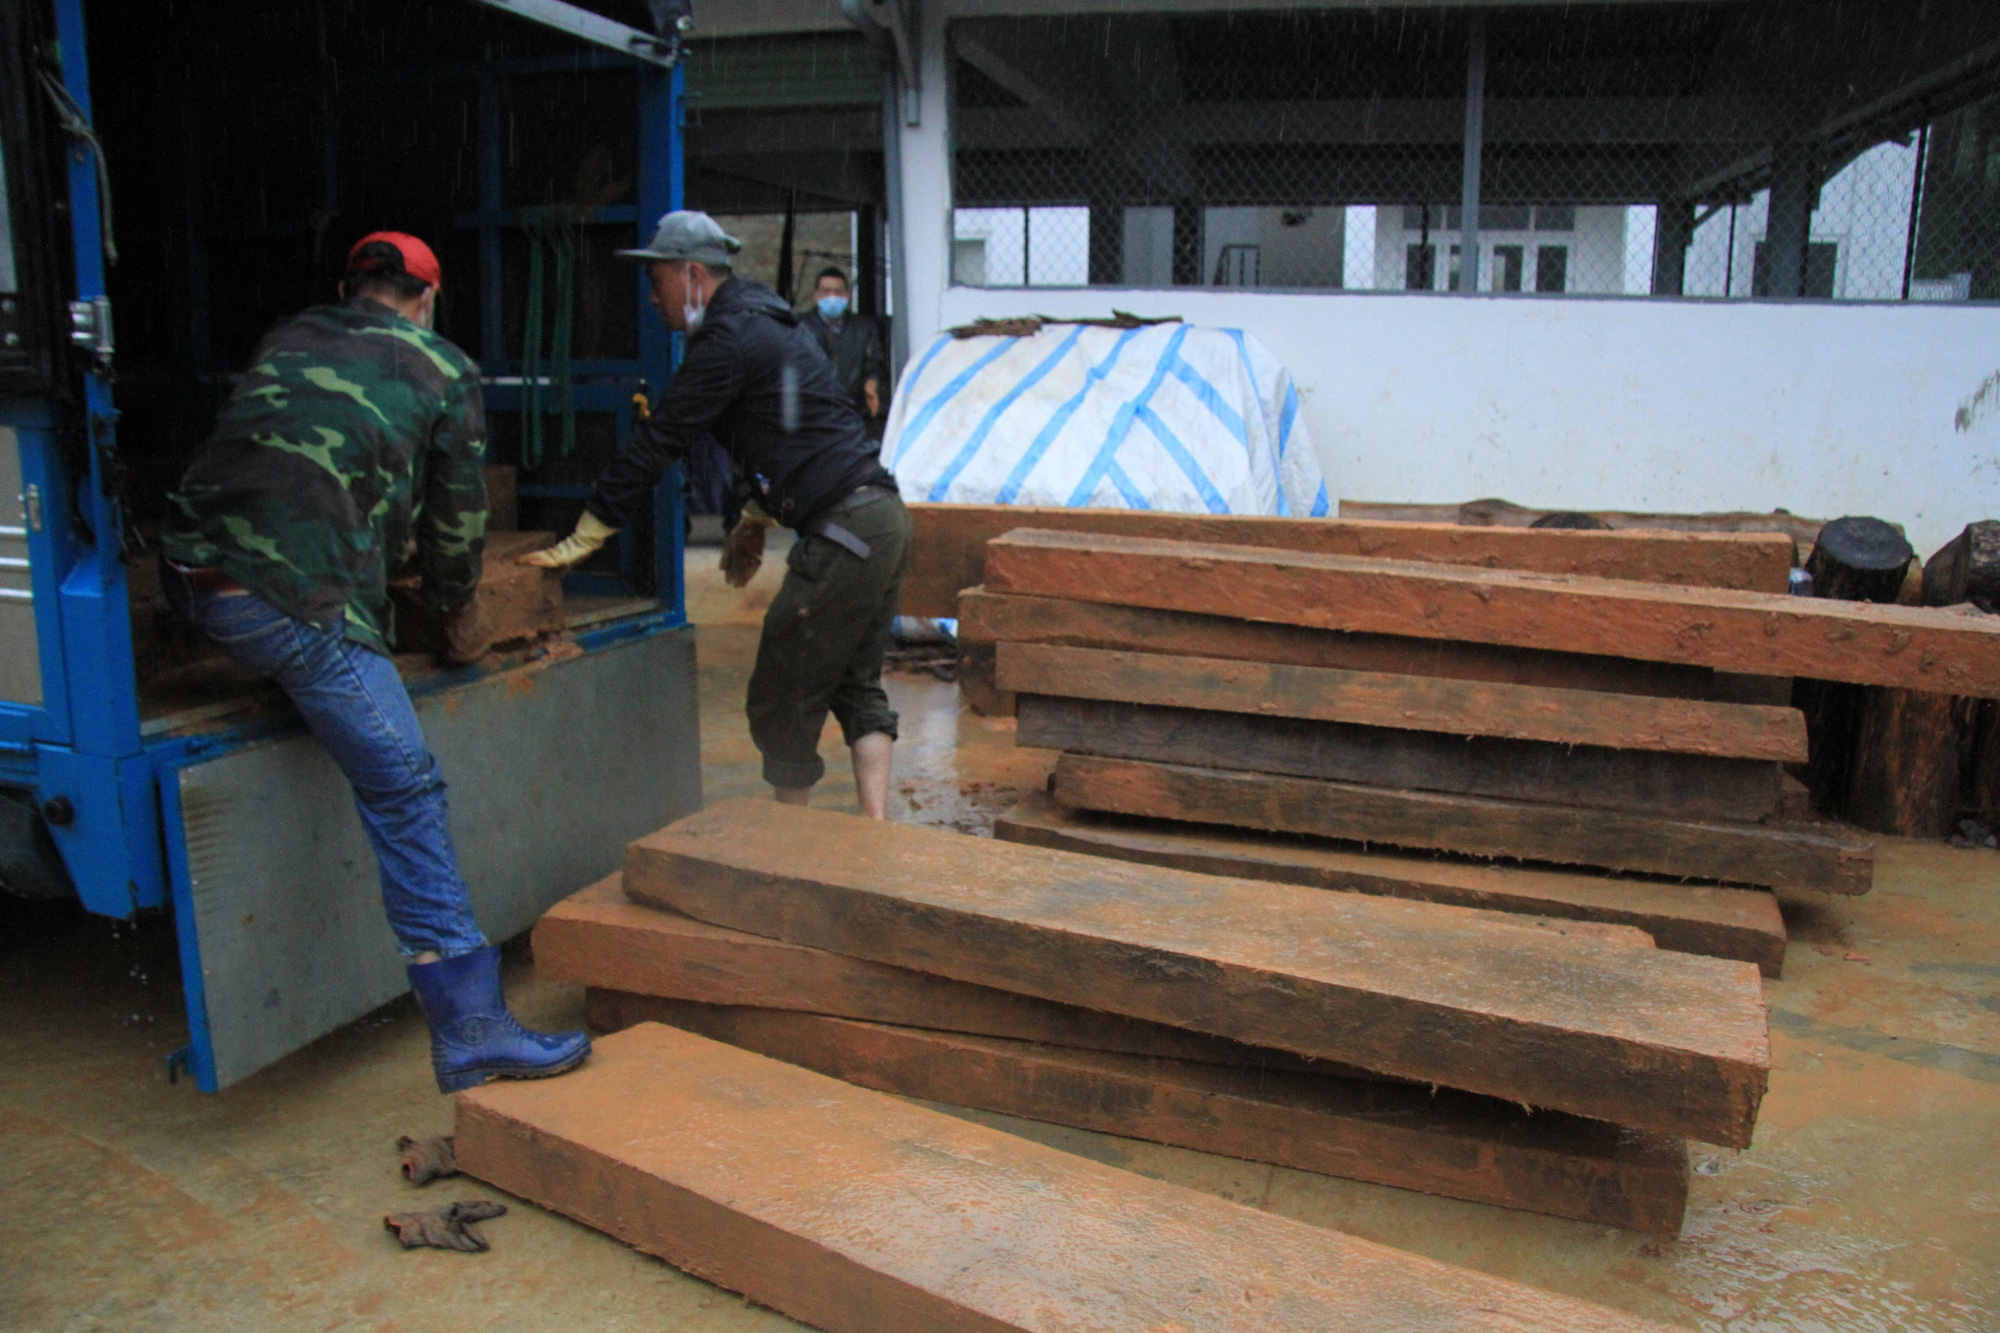 Lâm Đồng: Liên tiếp phát hiện tàng trữ, vận chuyển gỗ dổi trái phép - Ảnh 1.